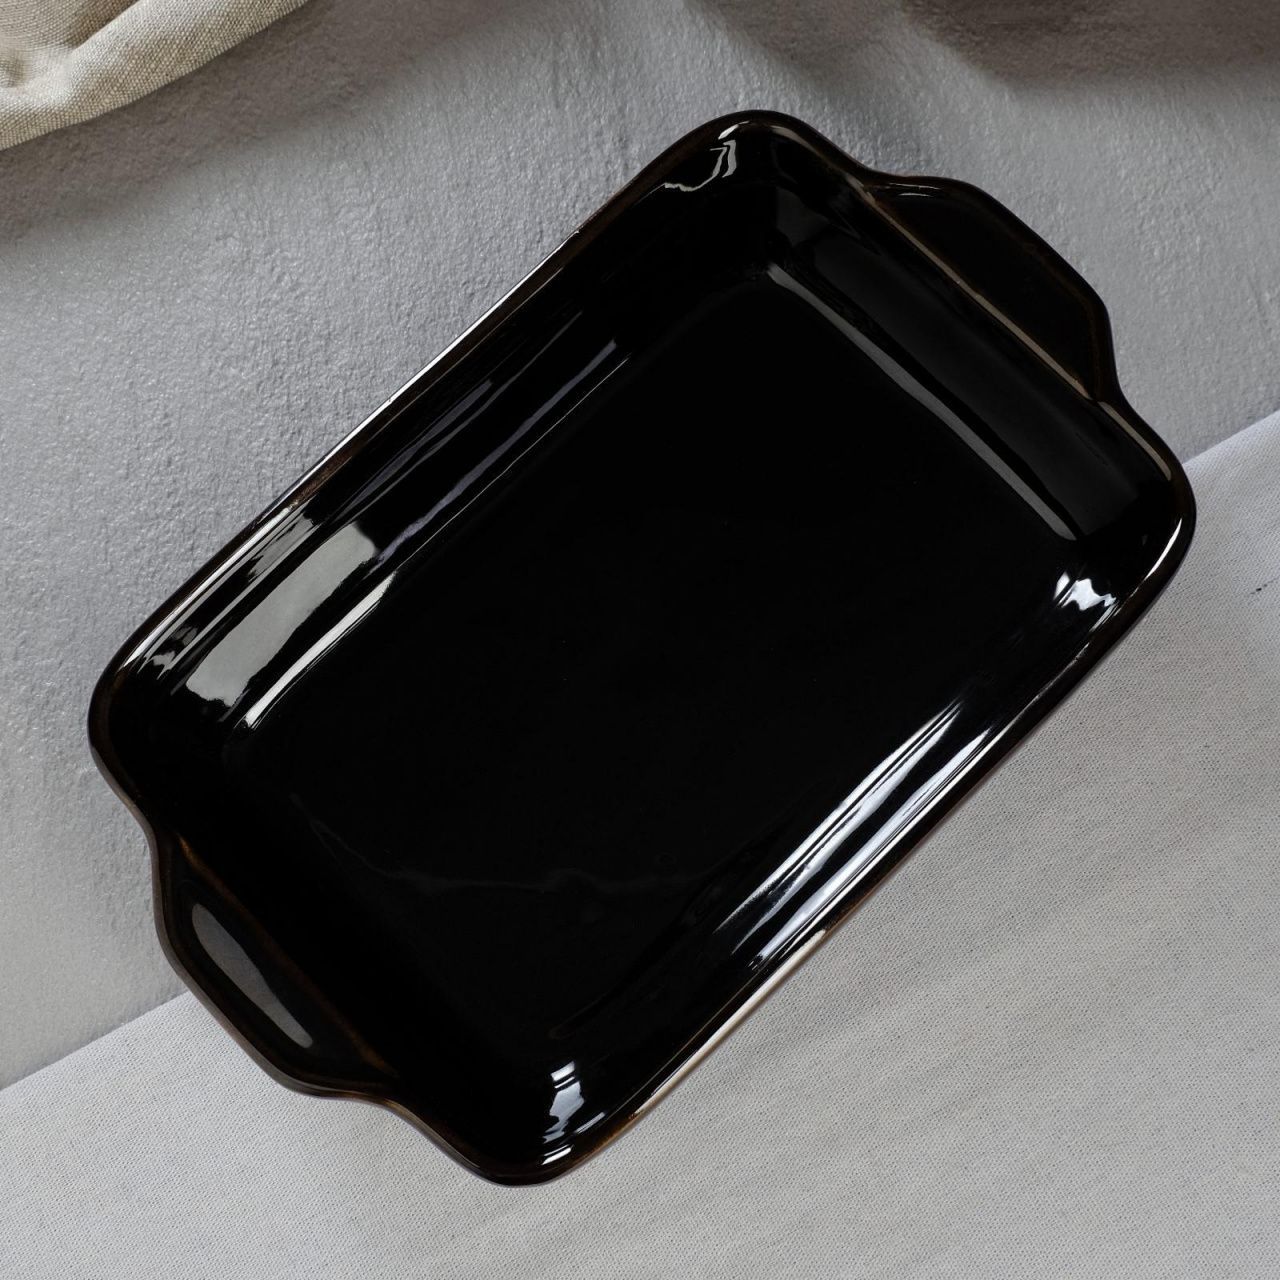 Противень для запекания керамический, черный, 28 см × 17 см × 6 см 5428823